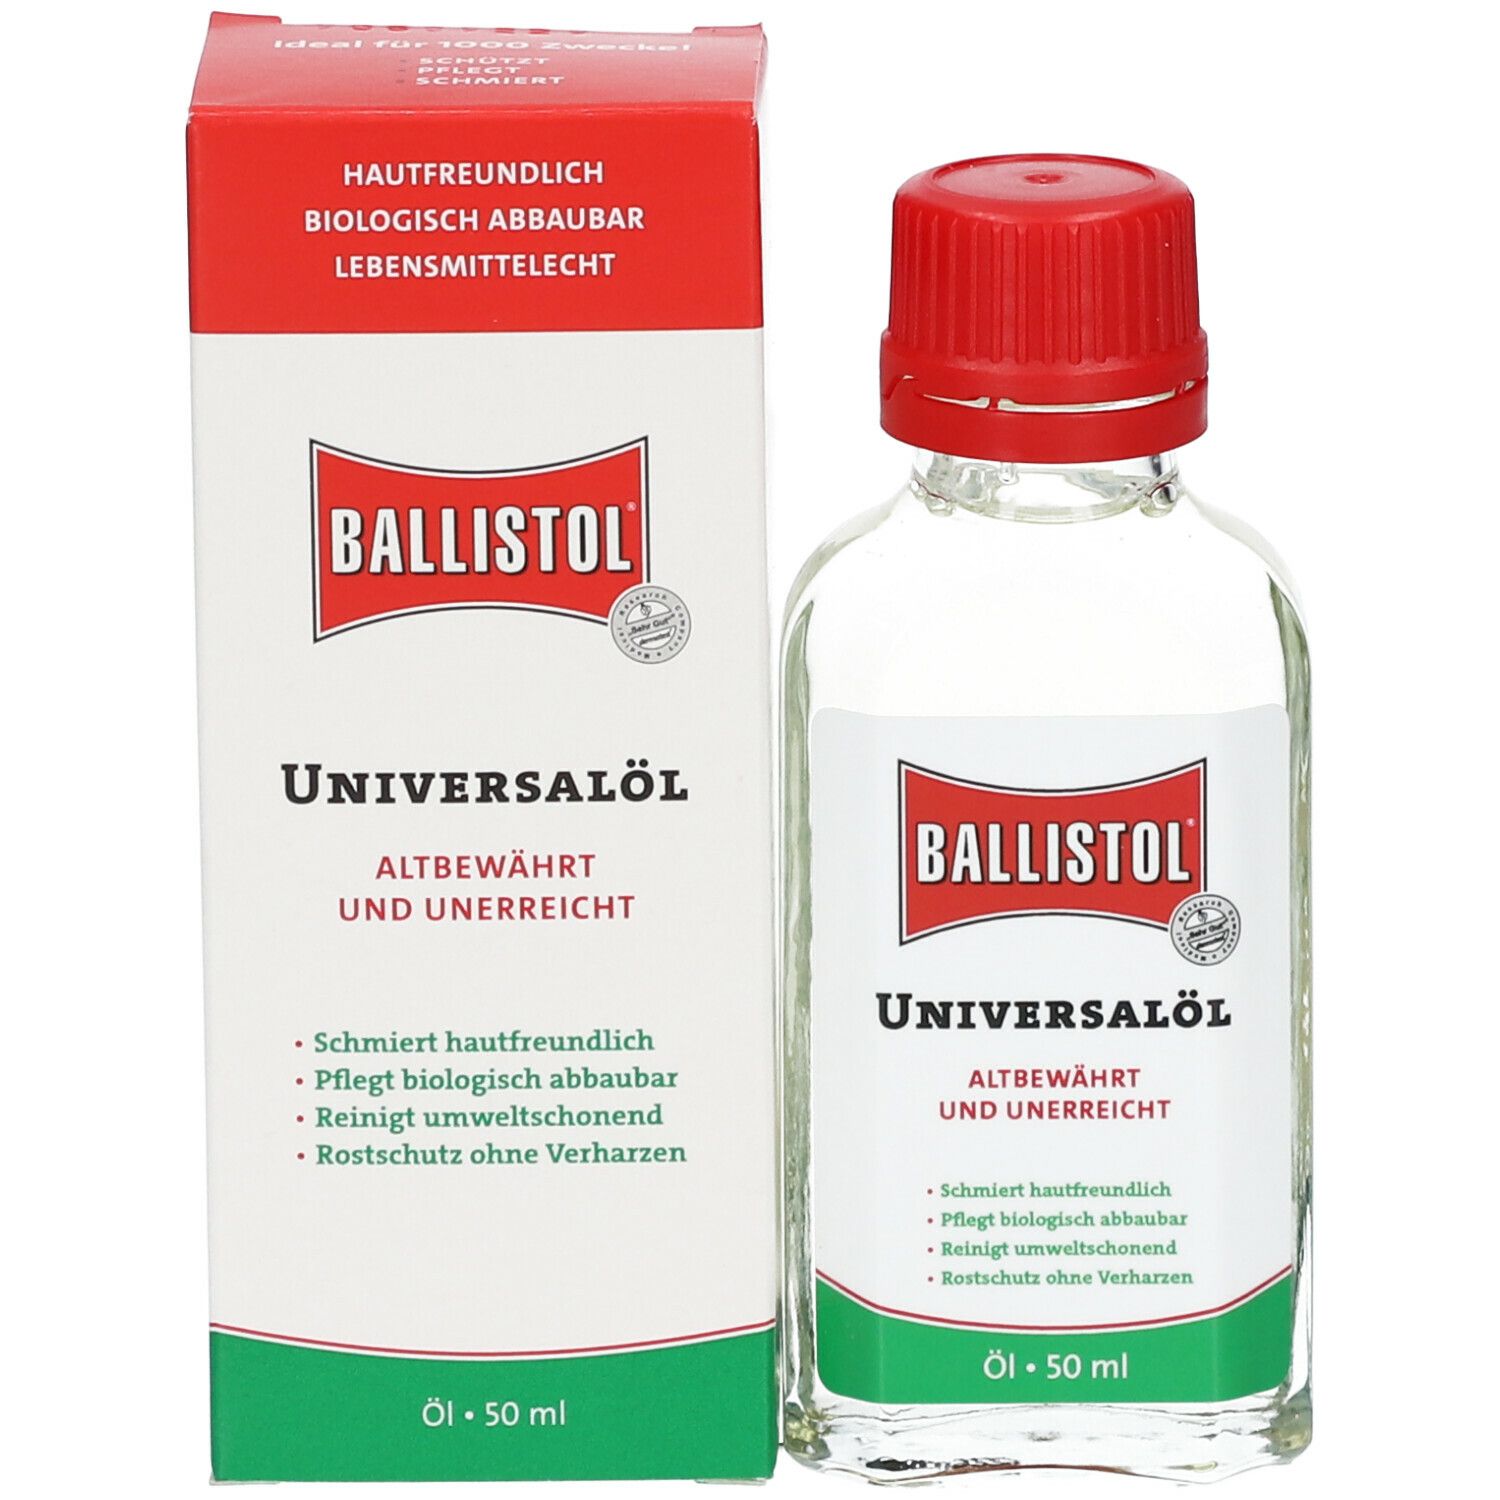 Ballistol-Universalöl 500ml Dose 5-sprachig Lieferant:E/D/E